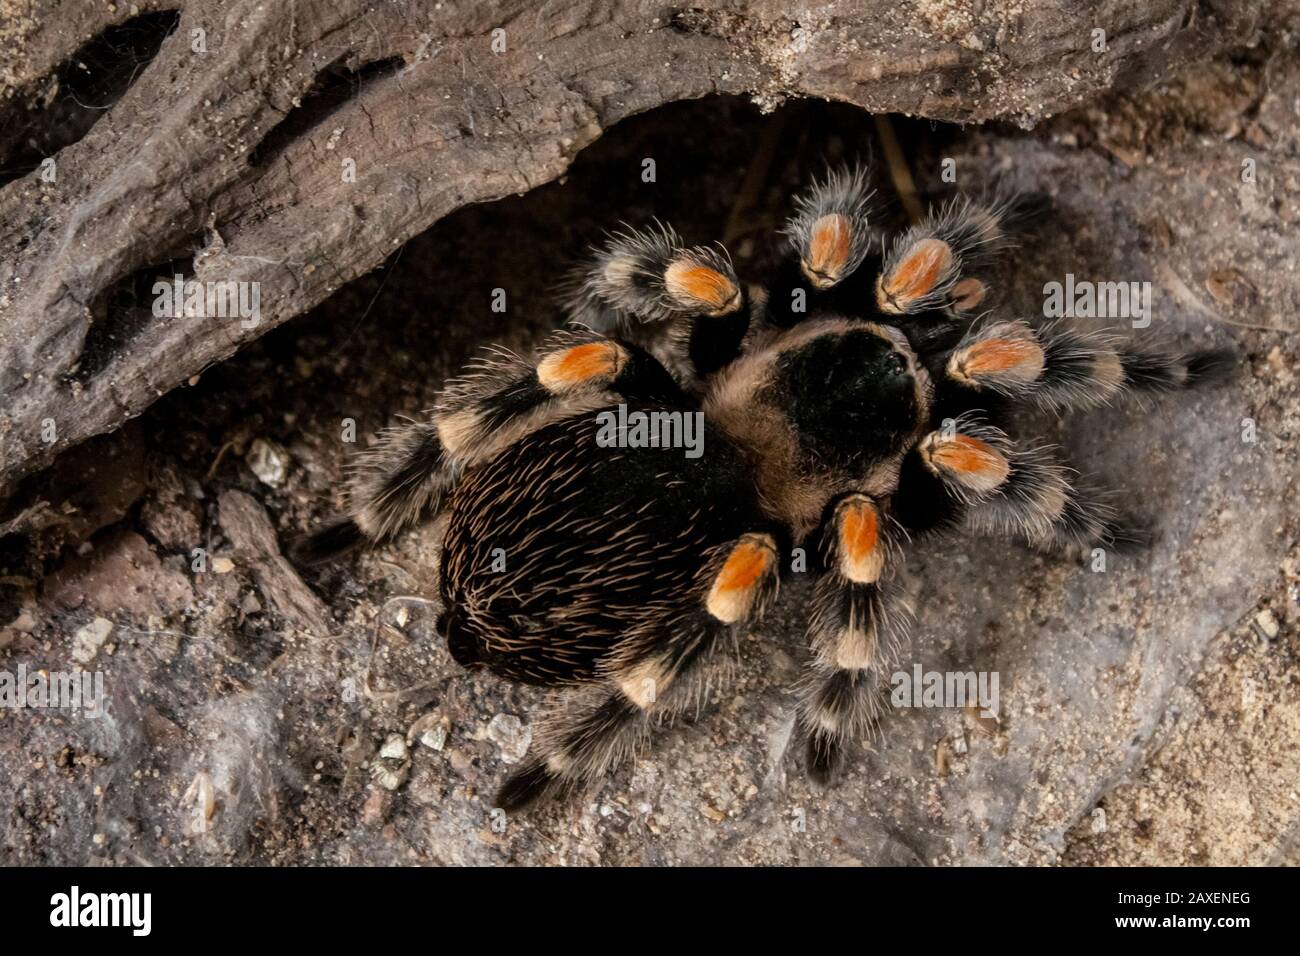 Clos-up of a pet tarantula inside a vivarium, exotic pet details Stock Photo